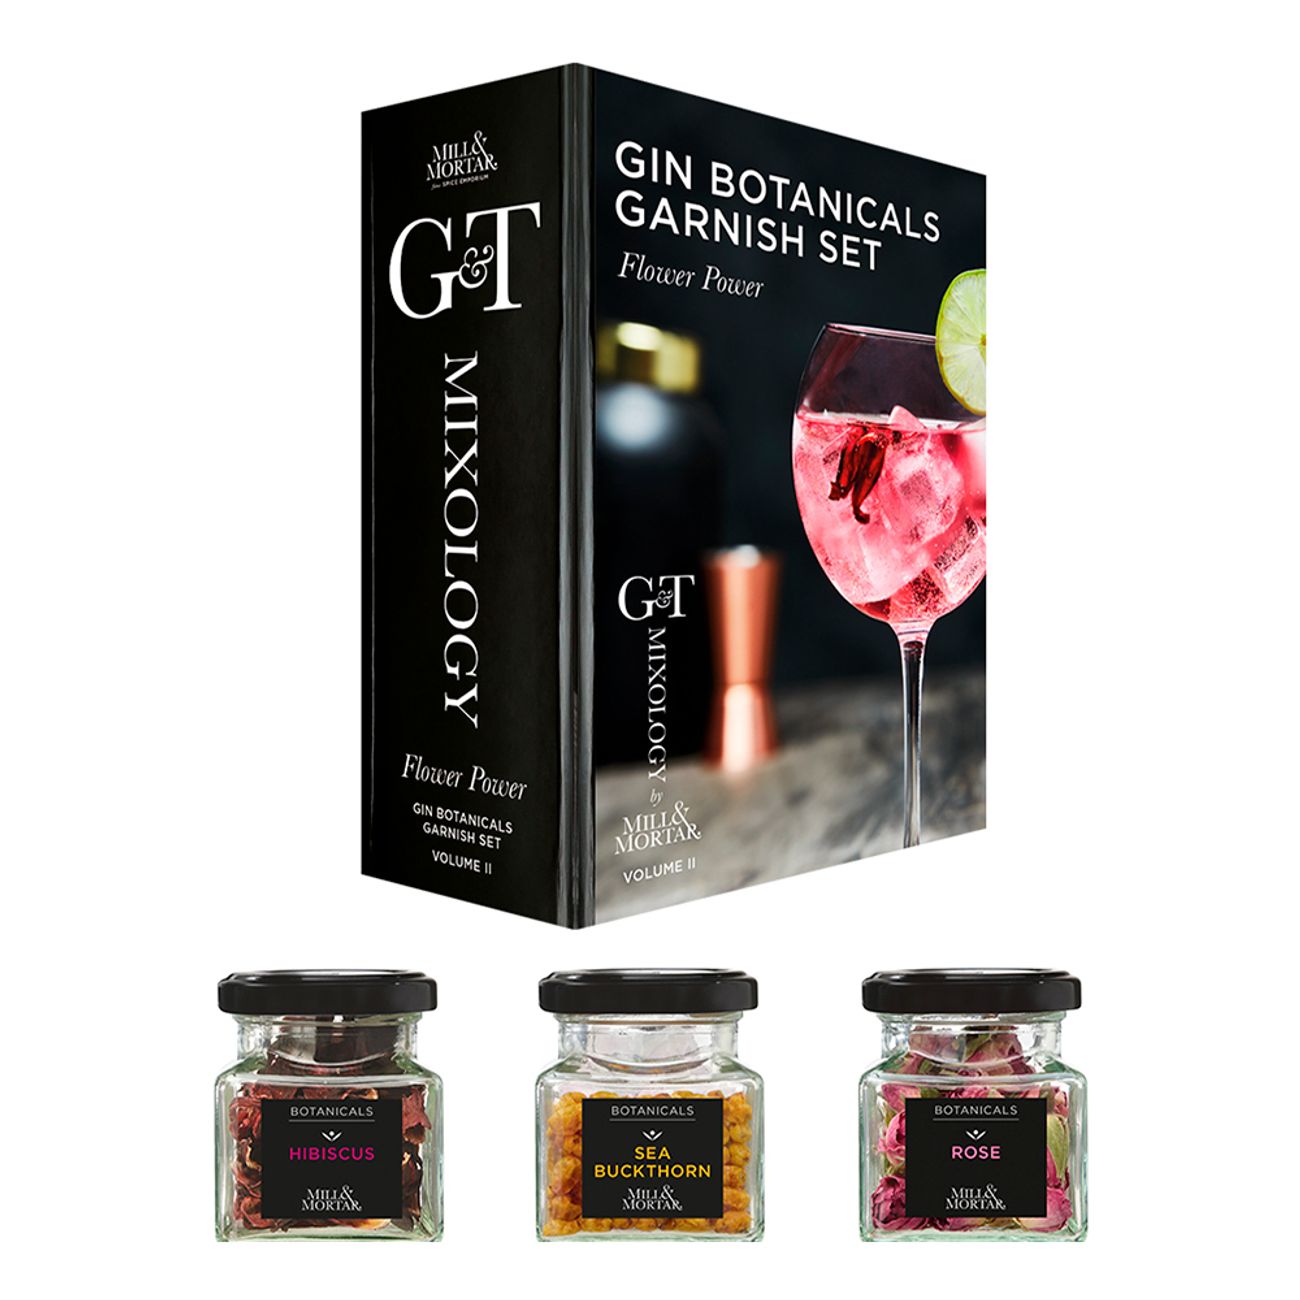 gin-botanicals-garnisch-set-flower-power-79705-1